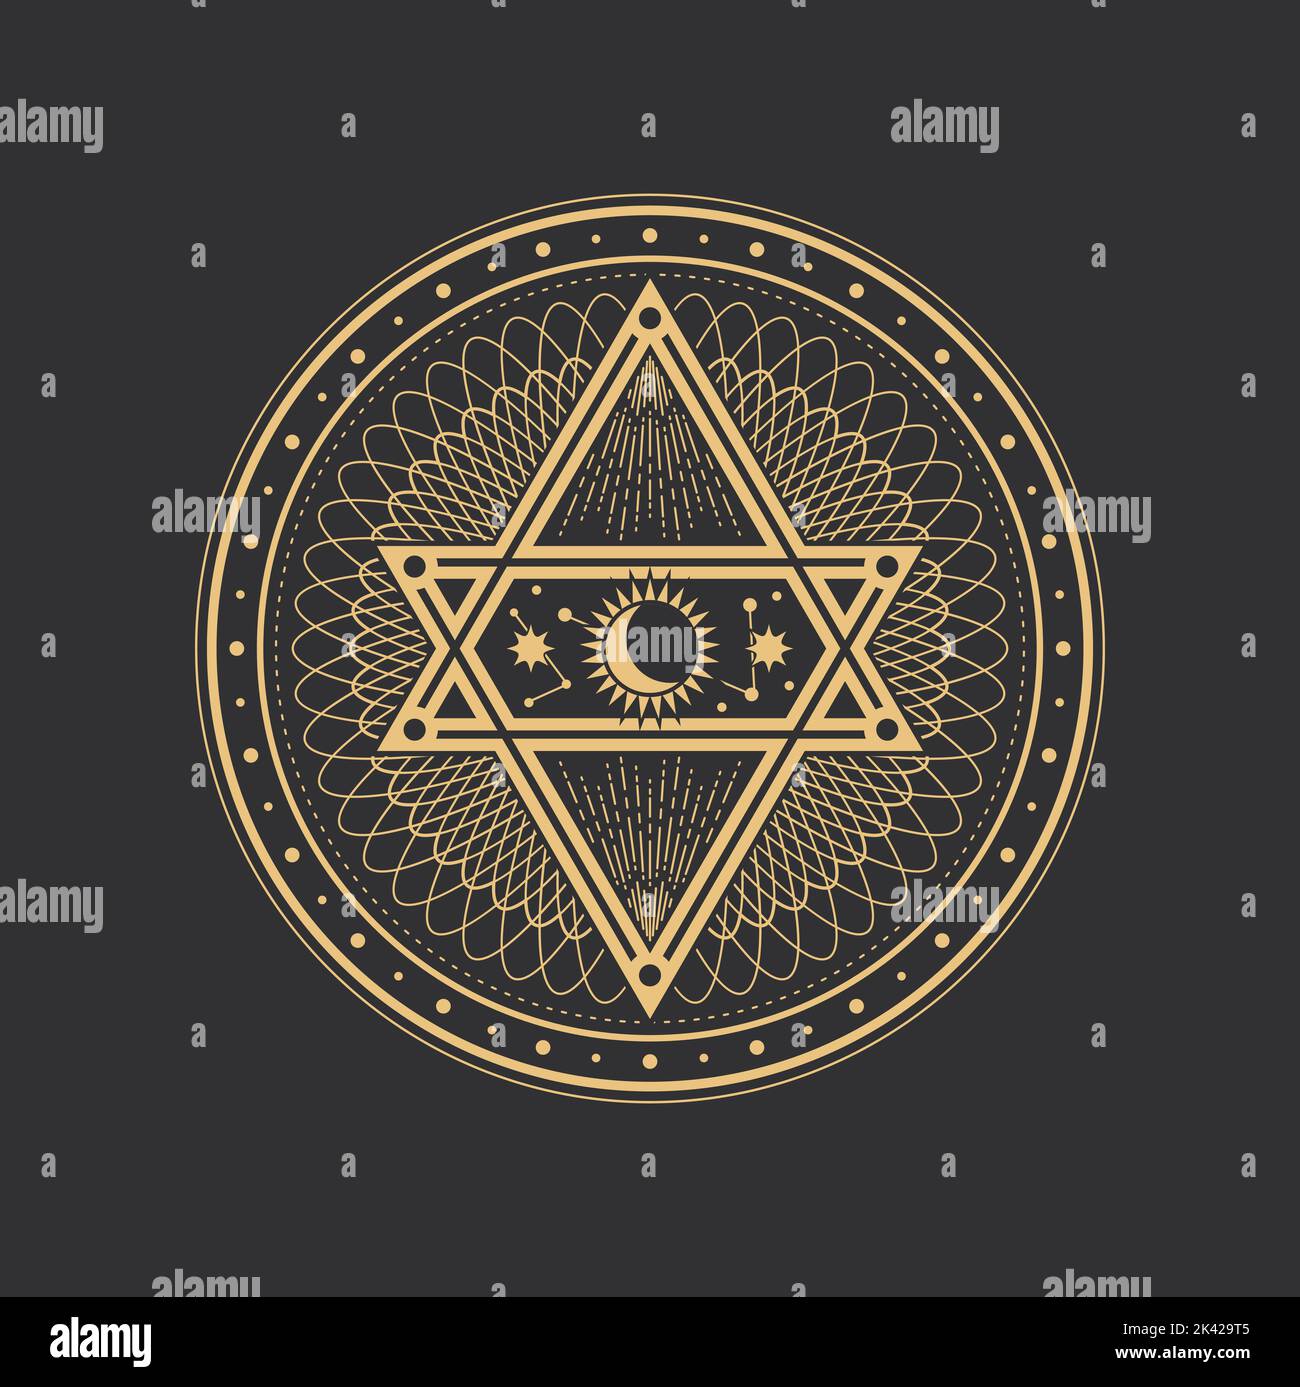 Tarot-Pentagramm, Mond-, Sonnen- und Sternsymbole, mystische Magie und Alchemie, Vektor-okkultes Zeichen. Esoterischer Kreis mit Pyramidenpentagramm, heilige Geometrie Zeichen von okkulten und magischen Tarot Stock Vektor